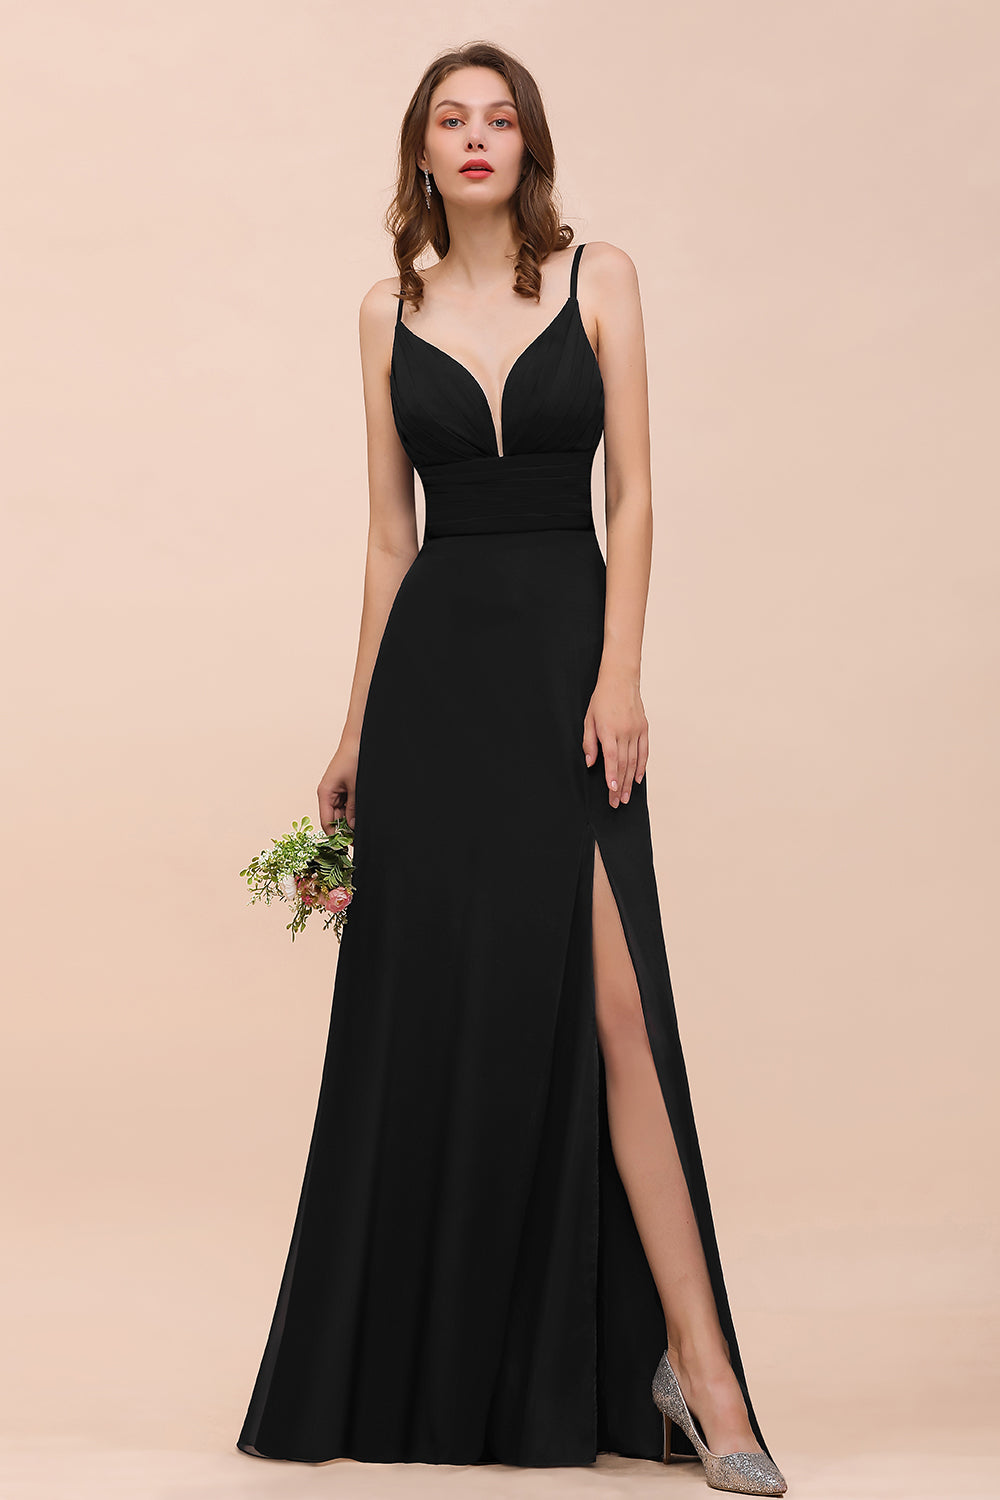 Bestellen Sie Schwarze Brautjungfernkleider Lang Günstig online bei babyonlinedress.de. Kleid für Brautjungfern maß geschneidert bekommen.